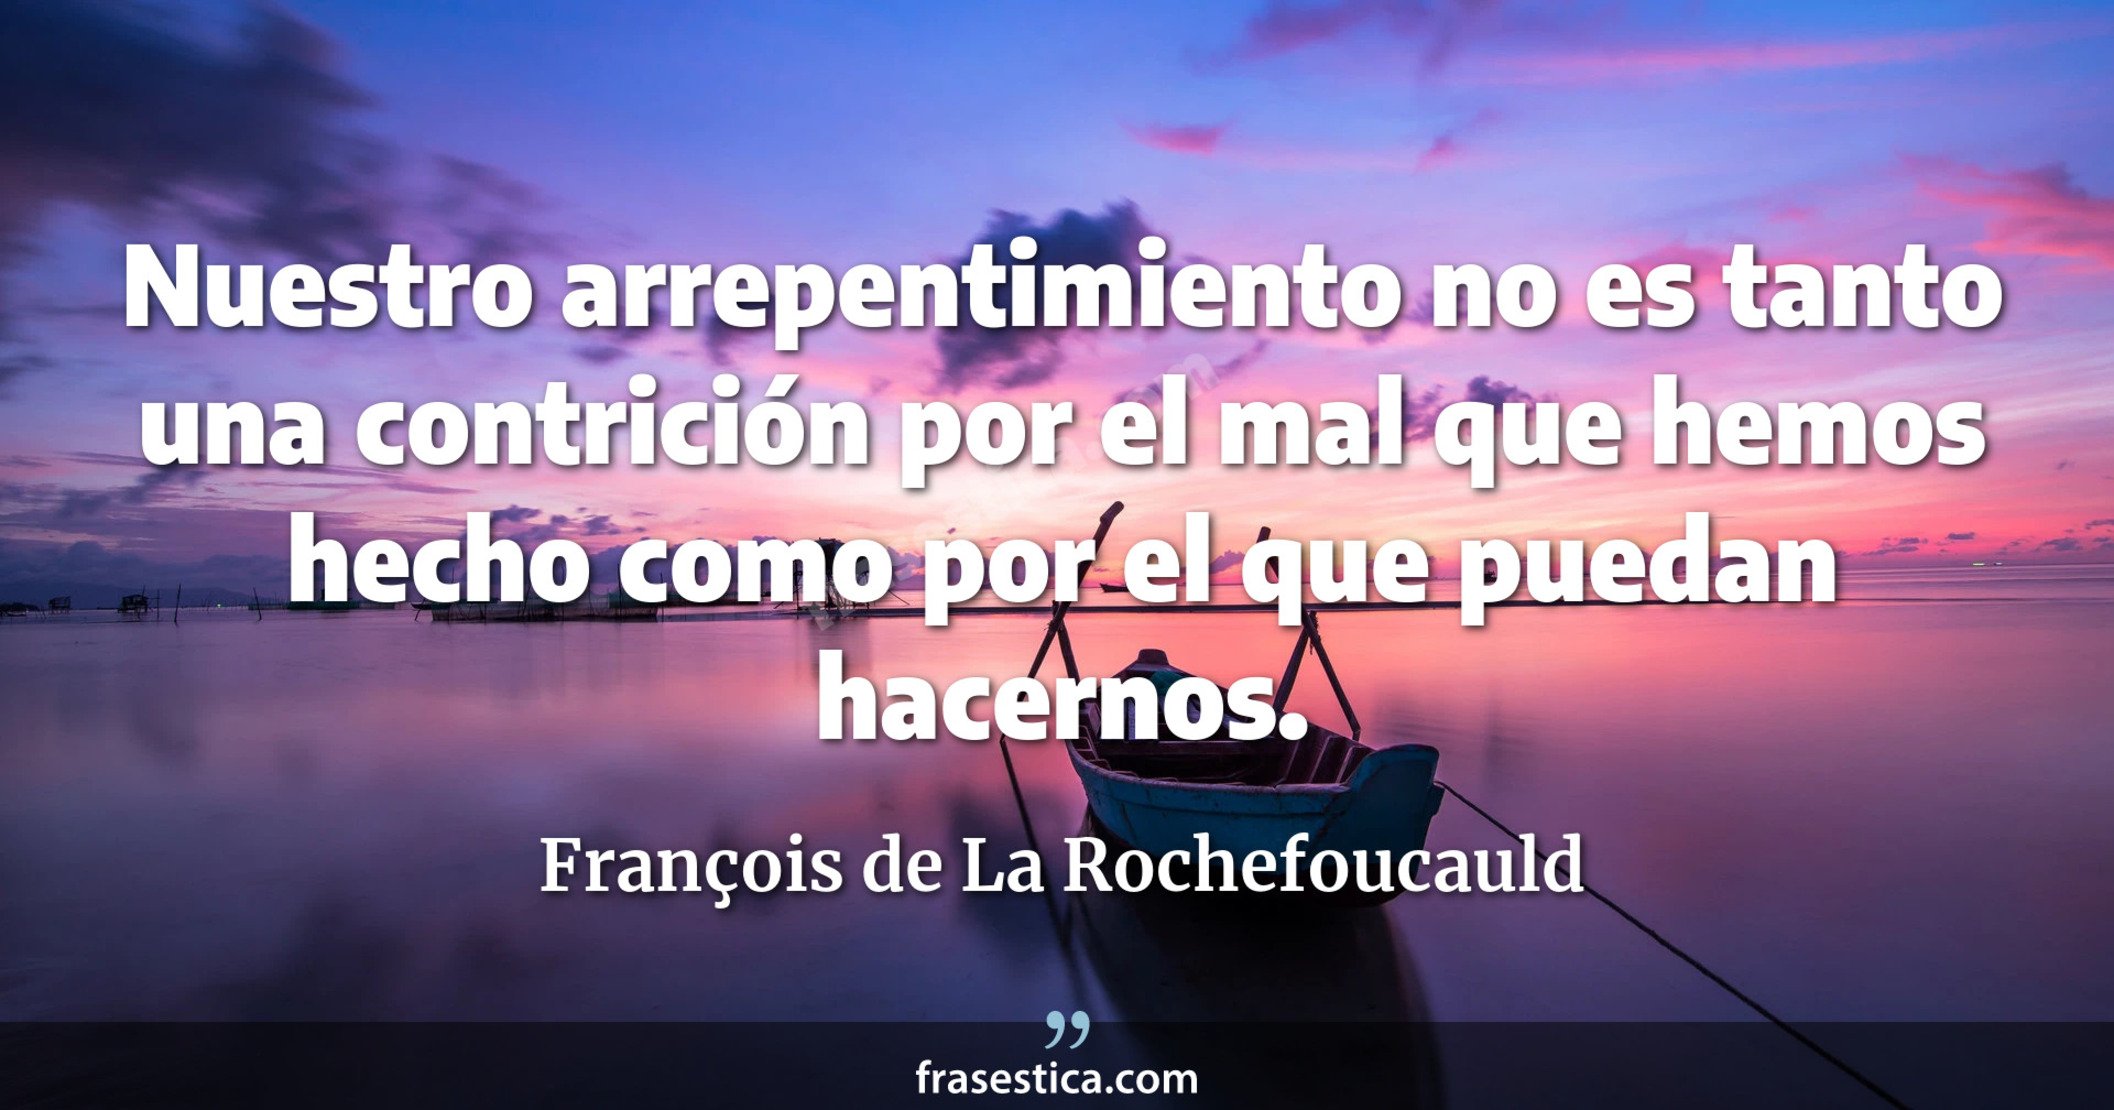 Nuestro arrepentimiento no es tanto una contrición por el mal que hemos hecho como por el que puedan hacernos. - François de La Rochefoucauld